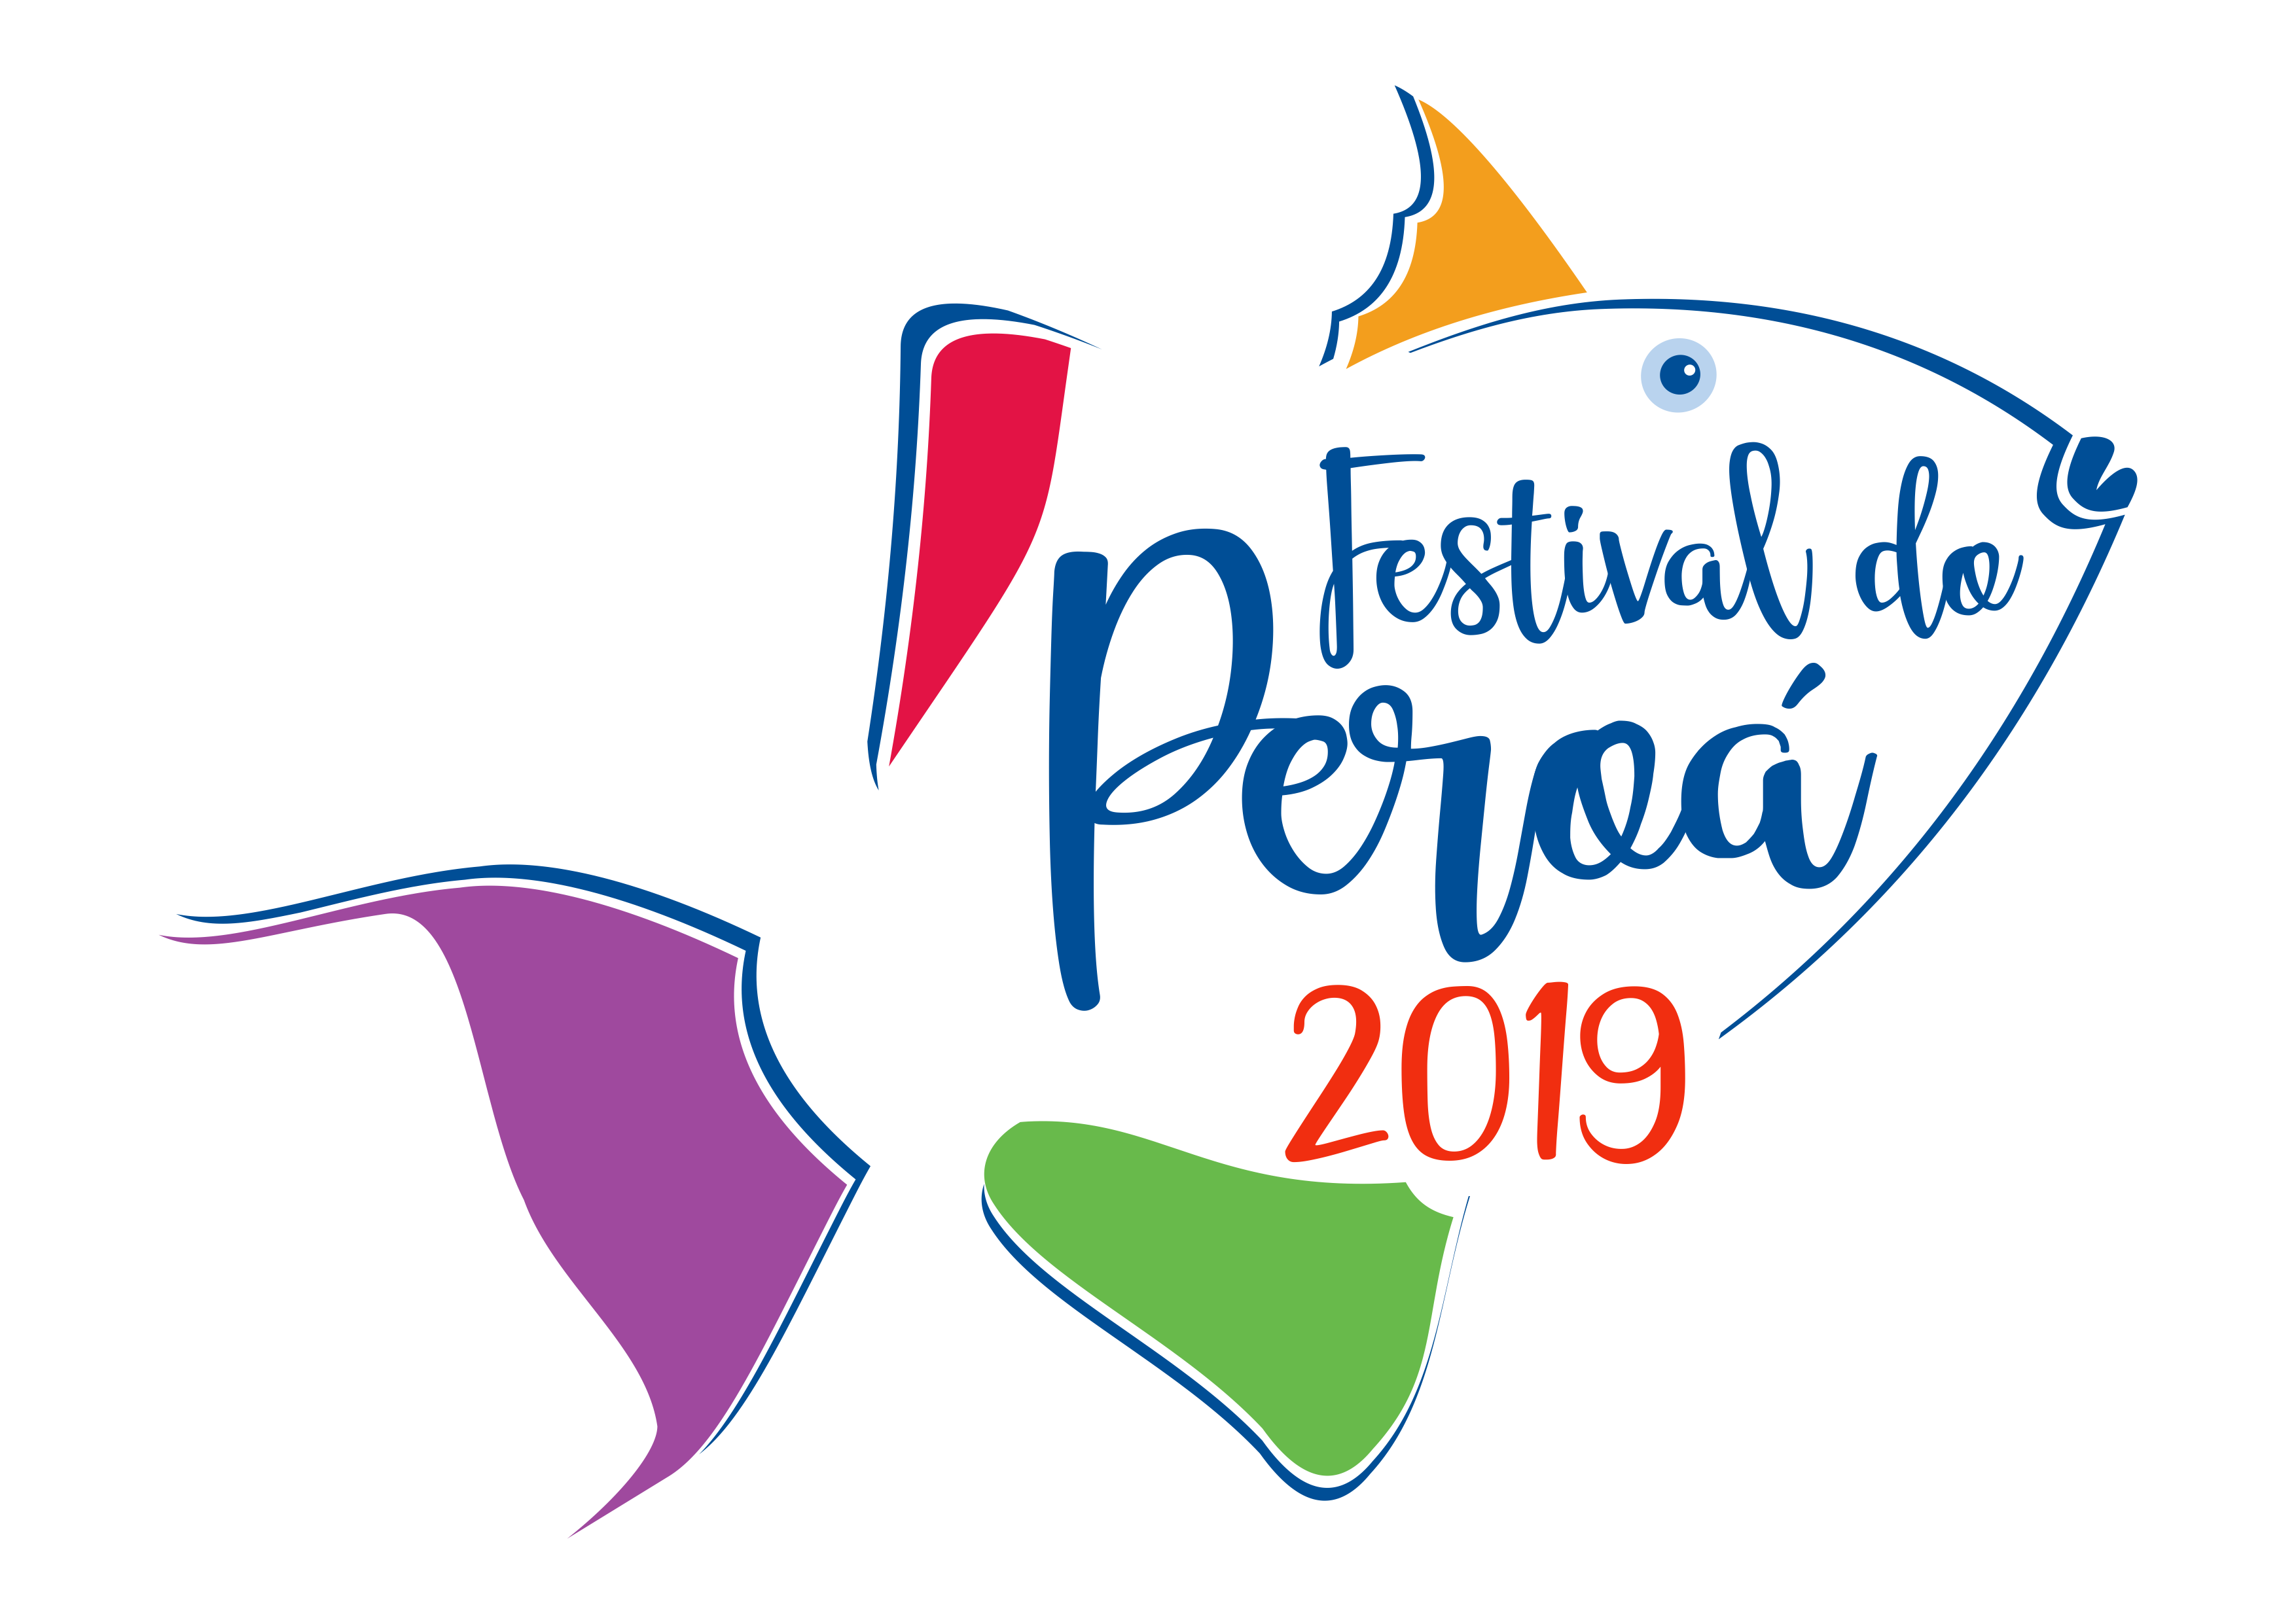 Festival do Peroá 2019 LogoFabioOliveira 2